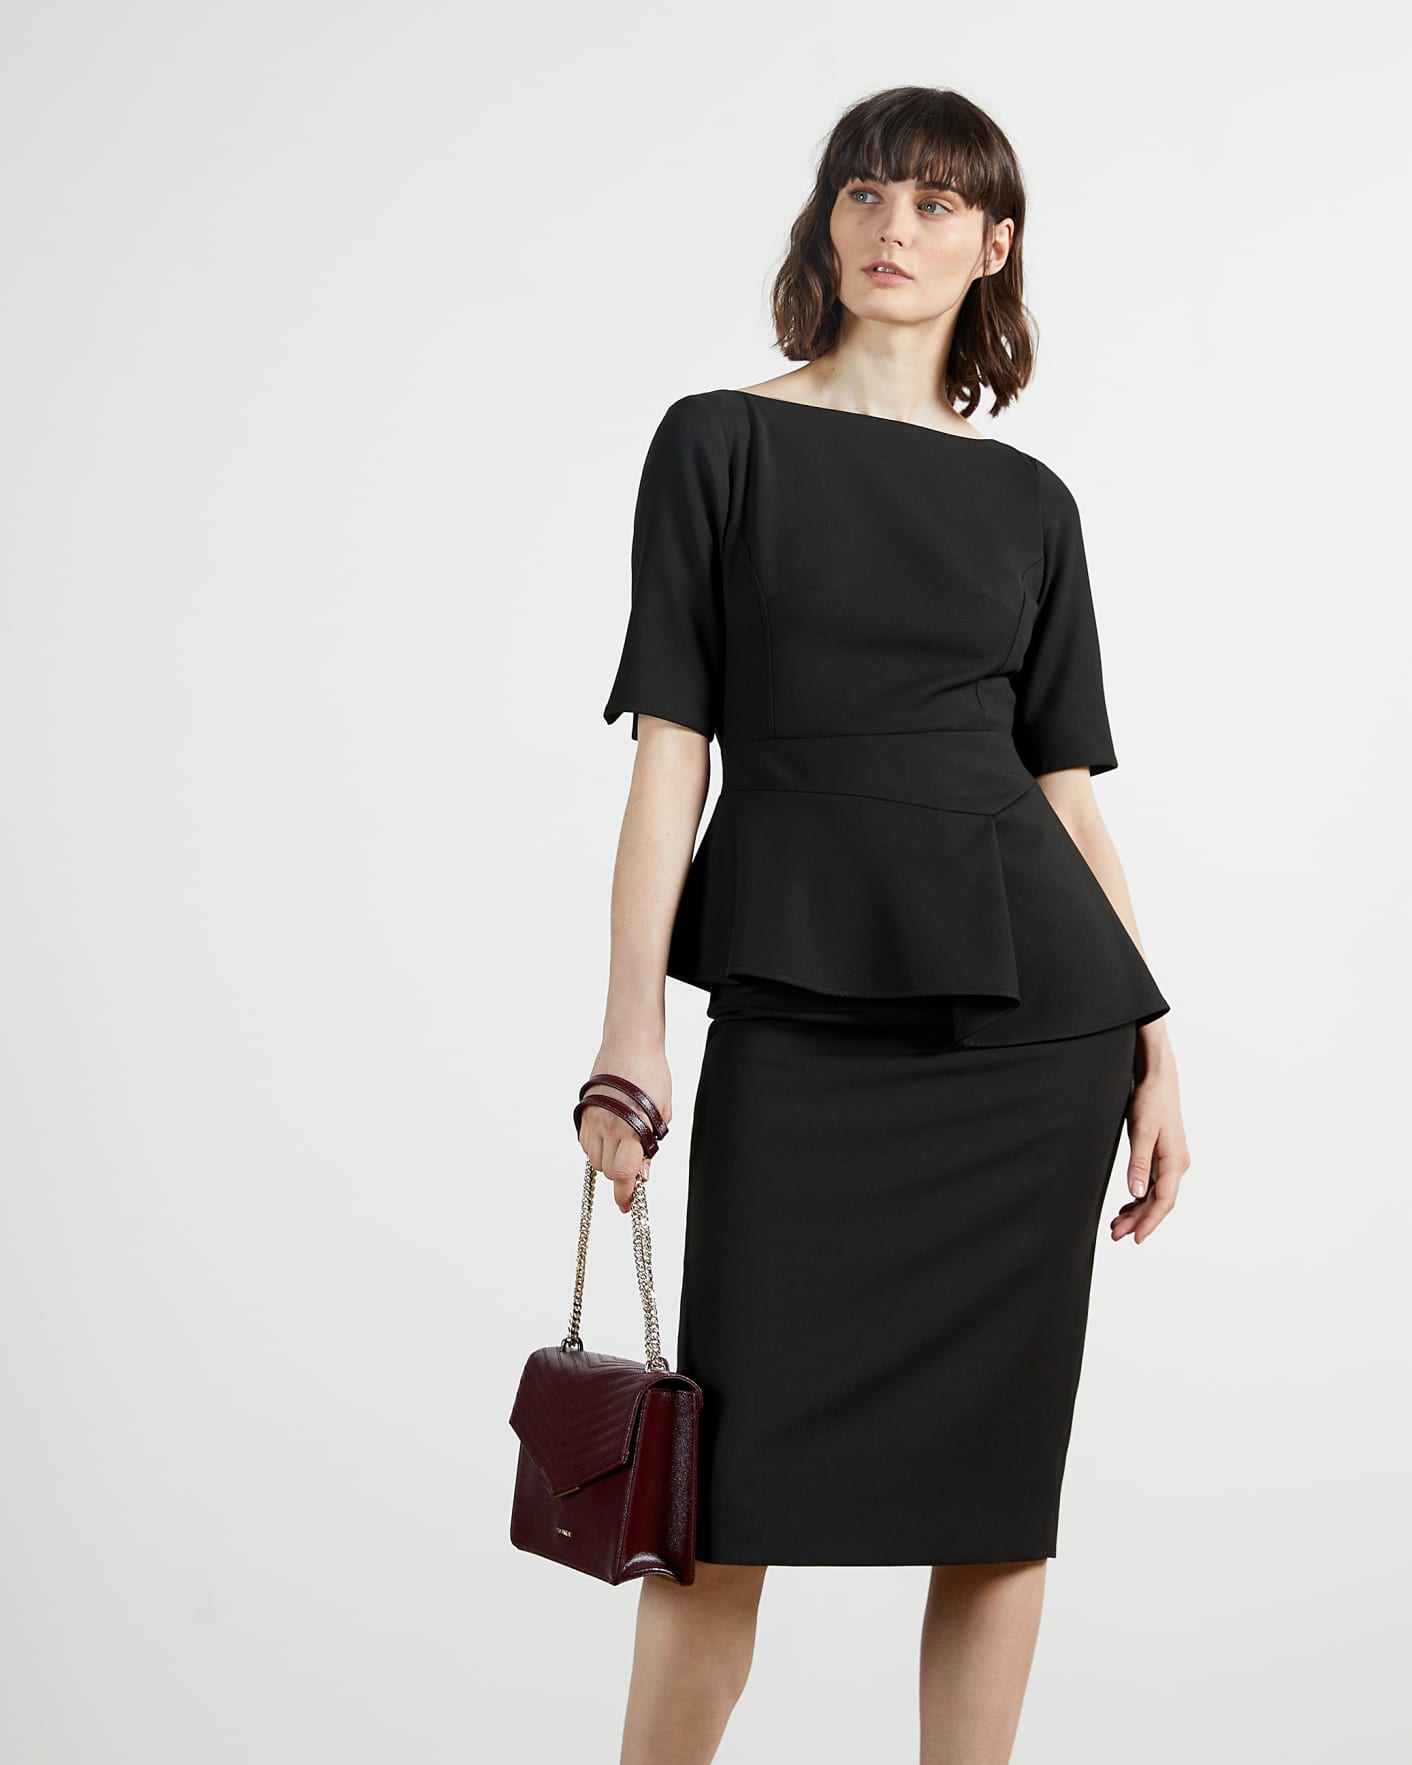 Black Peplum Detail Short Sleeve Dress Ted Baker